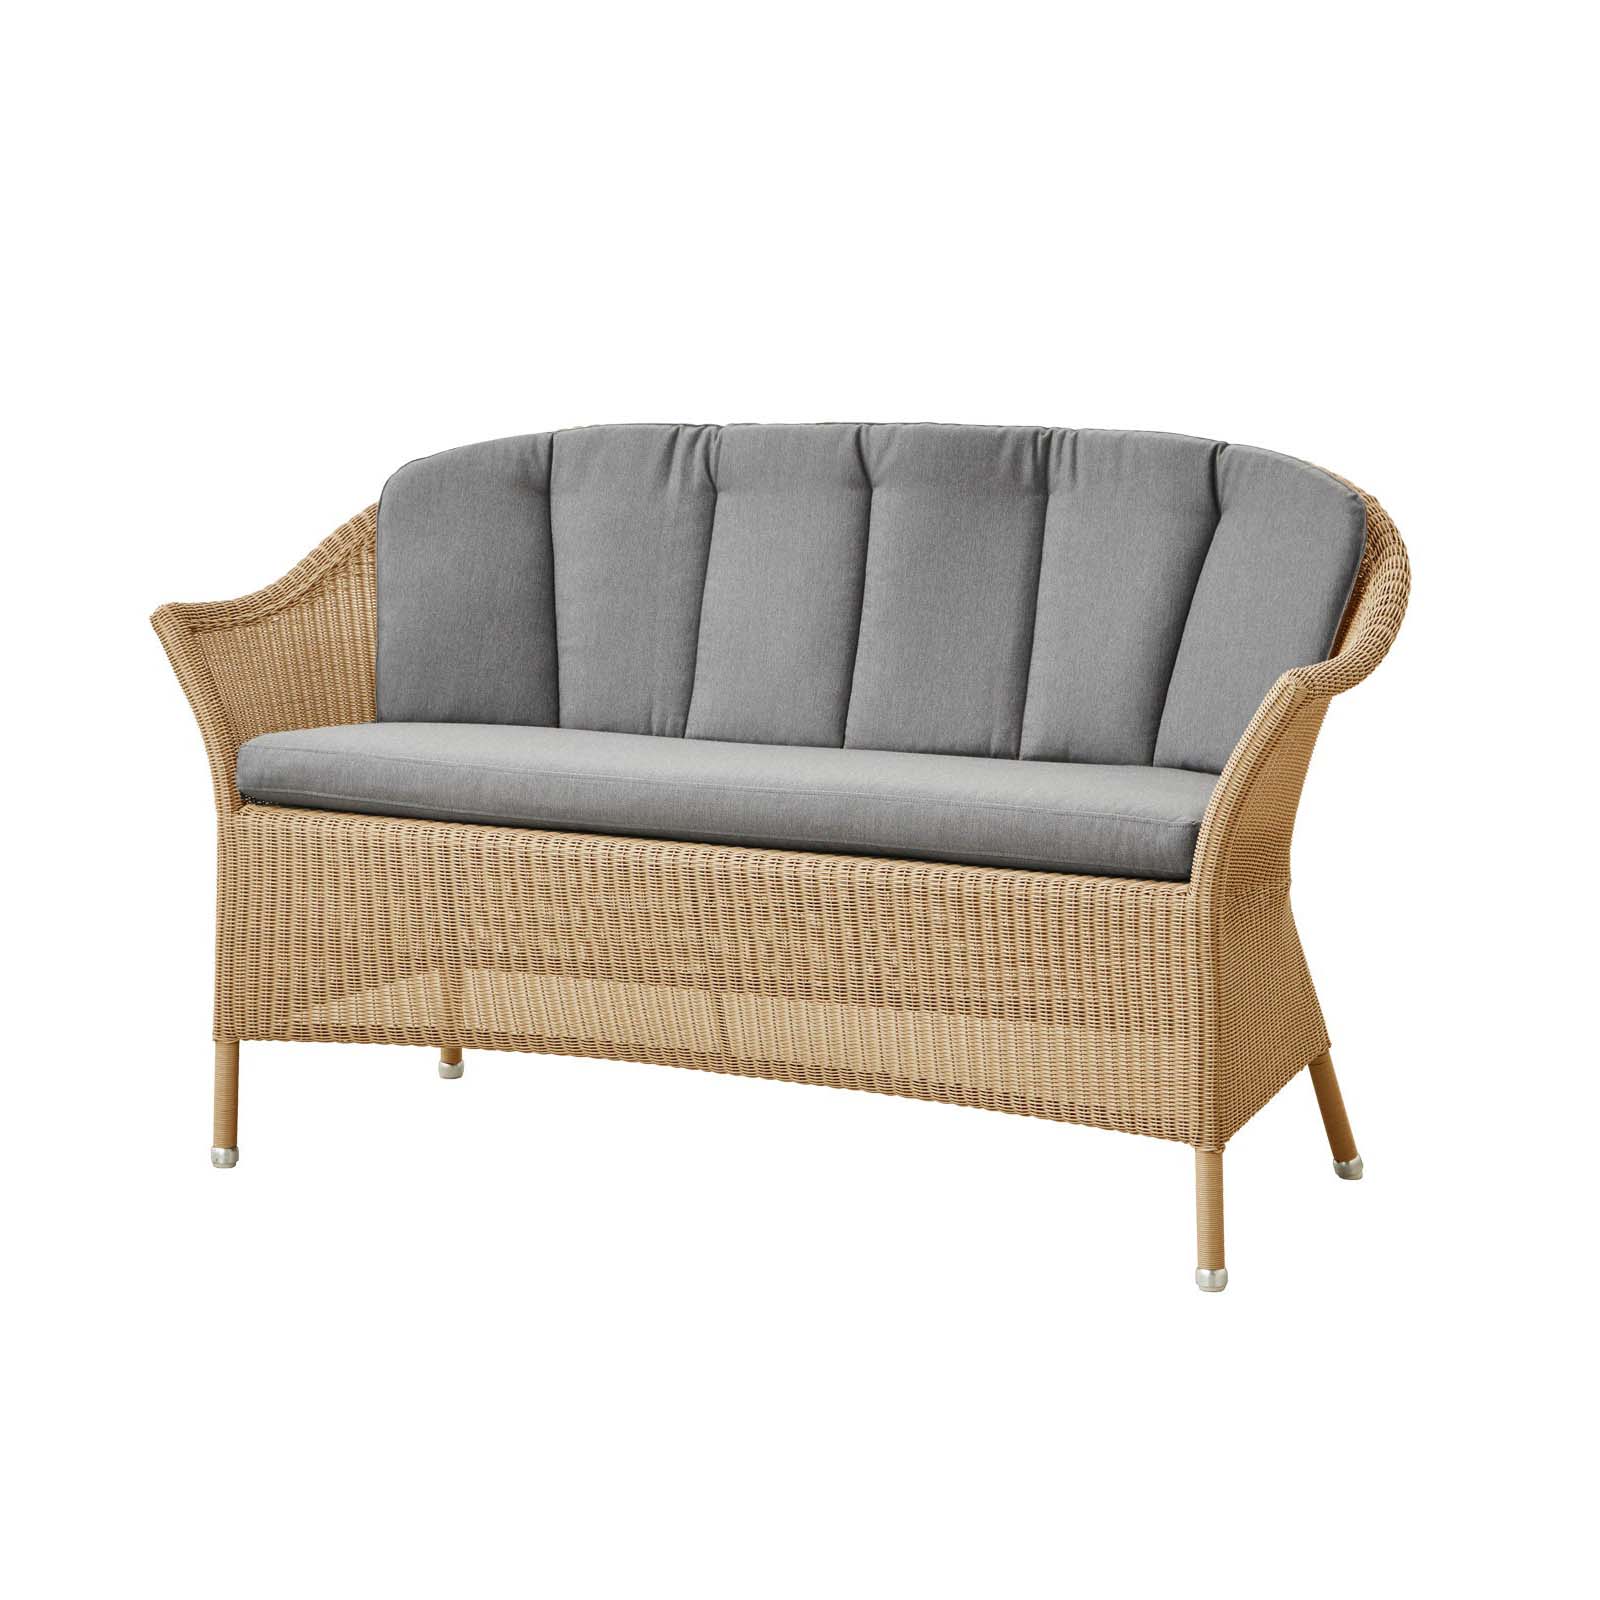 Lansing 2-Sitzer Sofa aus Cane-line Weave in Taupe mit Kissen aus Cane-line Natté in Grey